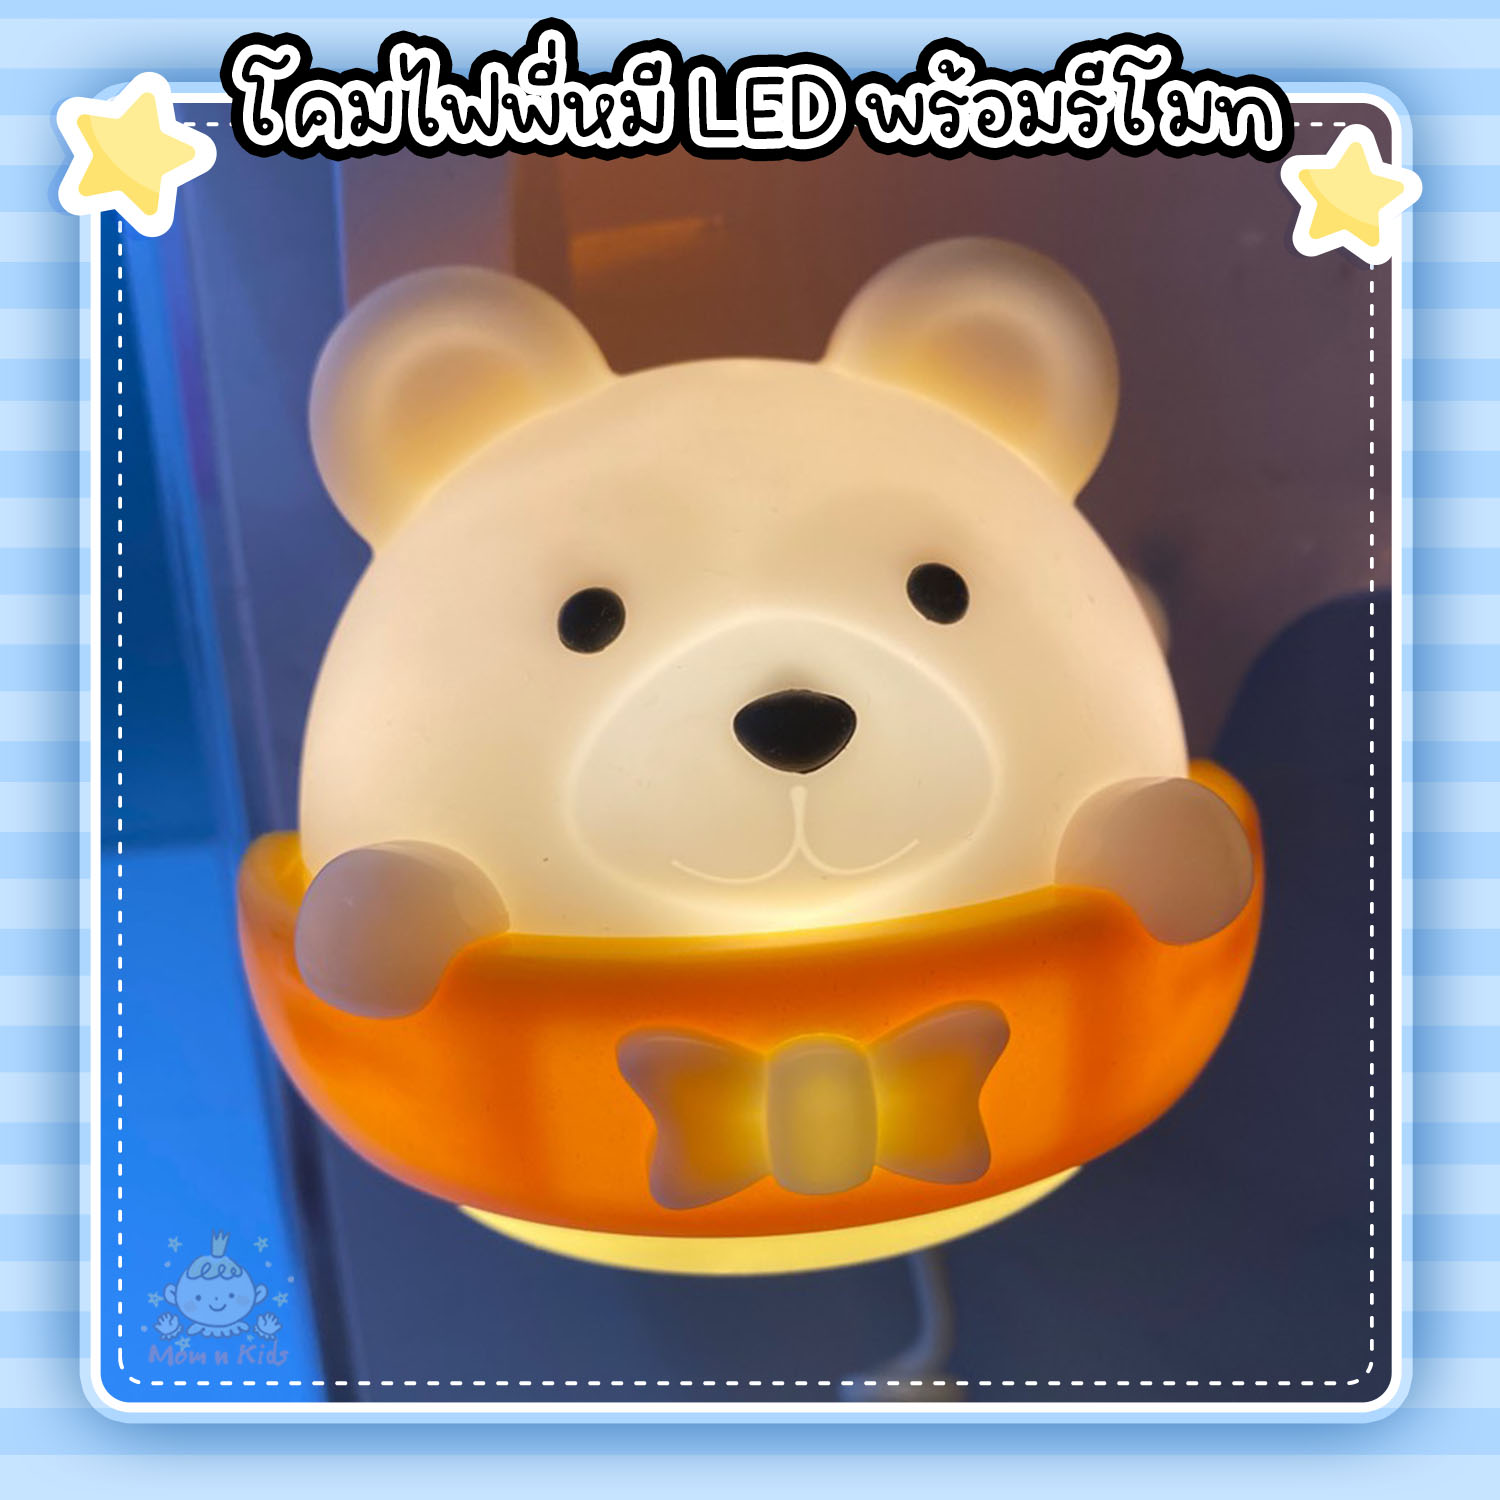 โคมไฟพี่หมี LED พร้อมรีโมท ปรับระดับได้ 10 ระดับ โคมไฟเด็กอ่อน โคมไฟเด็ก โคมไฟถนอมสายตา โคมไฟ โคมไฟห้องนอน โคมไฟห้องเด็ก โคมไฟเด็กเล็ก